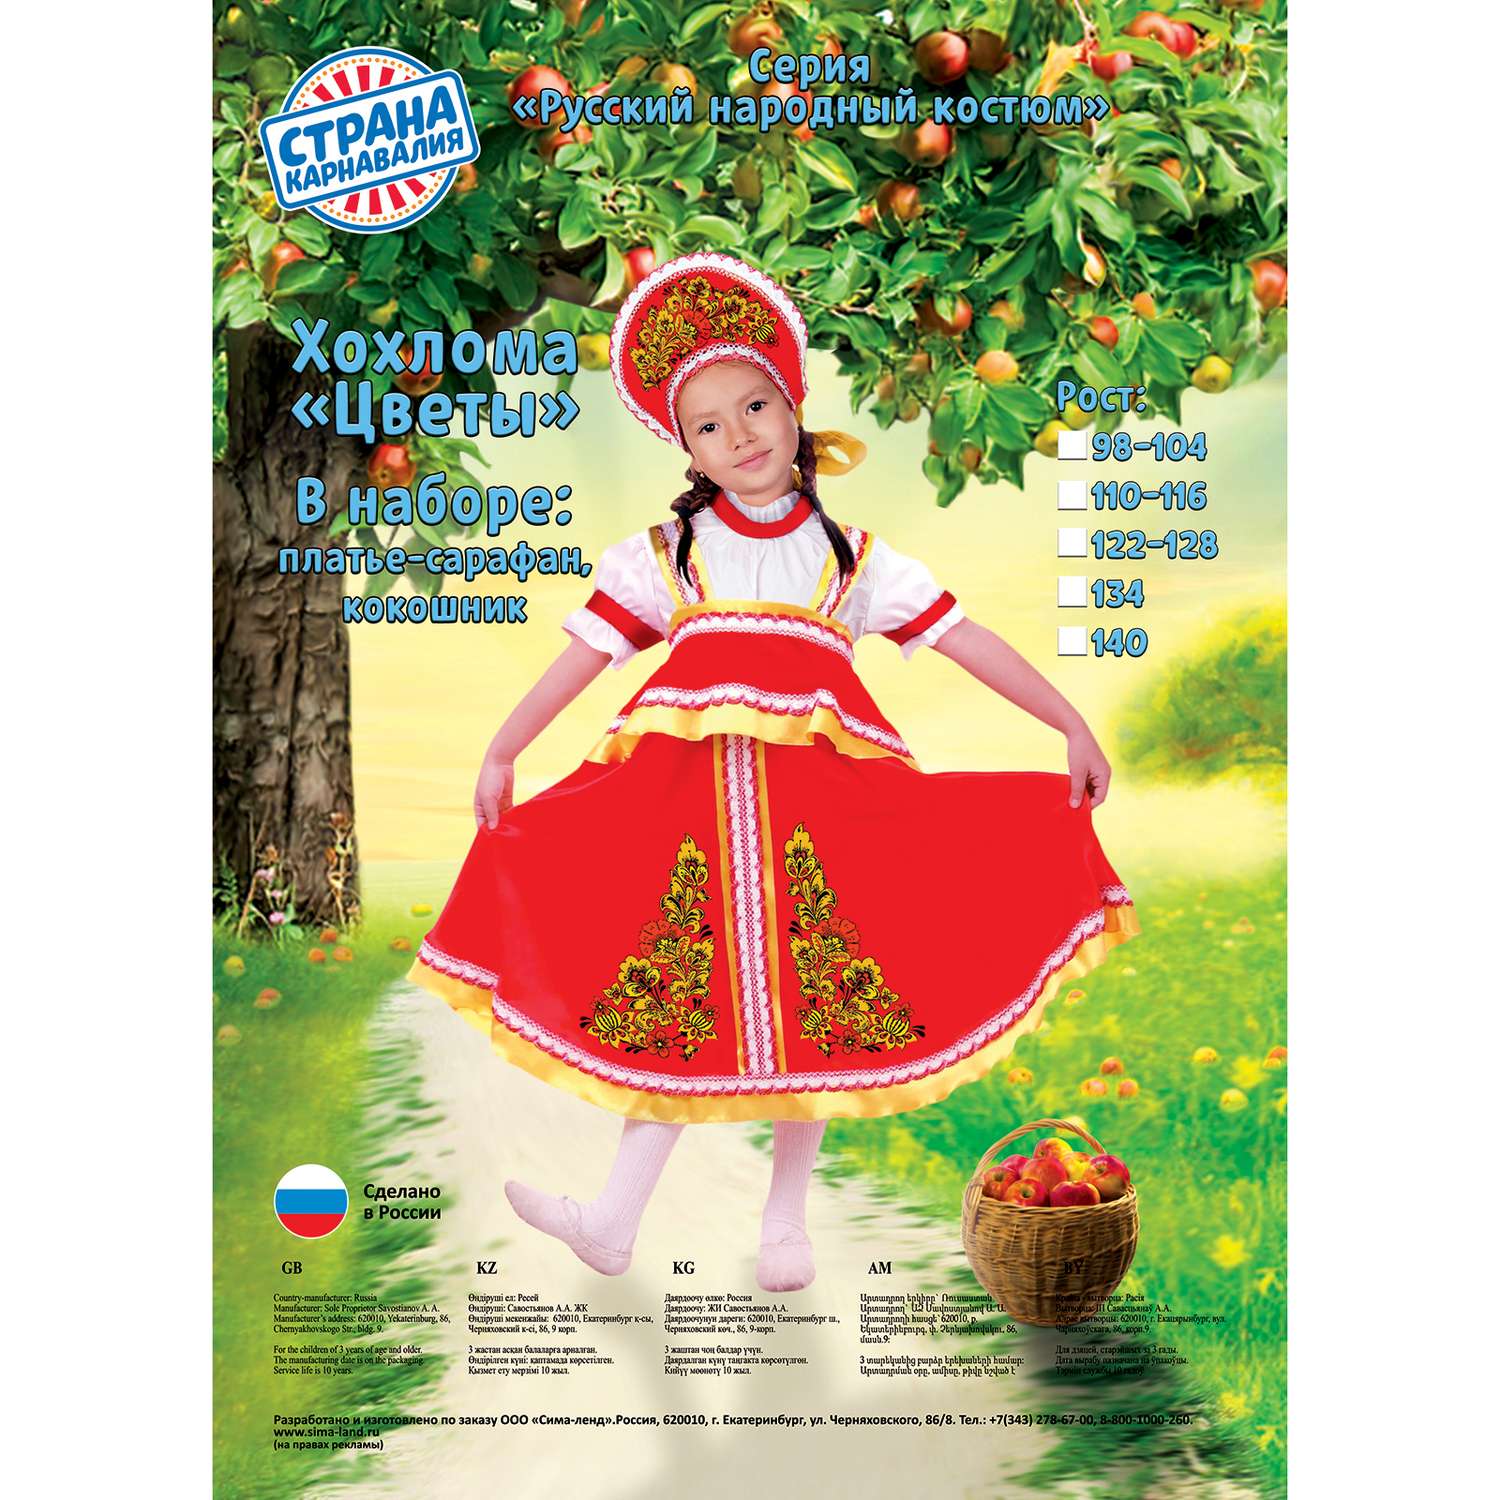 Карнавальный русский костюм Страна карнавалия Хохлома цветы размер 34  рост 134 см 2818679 - фото 2